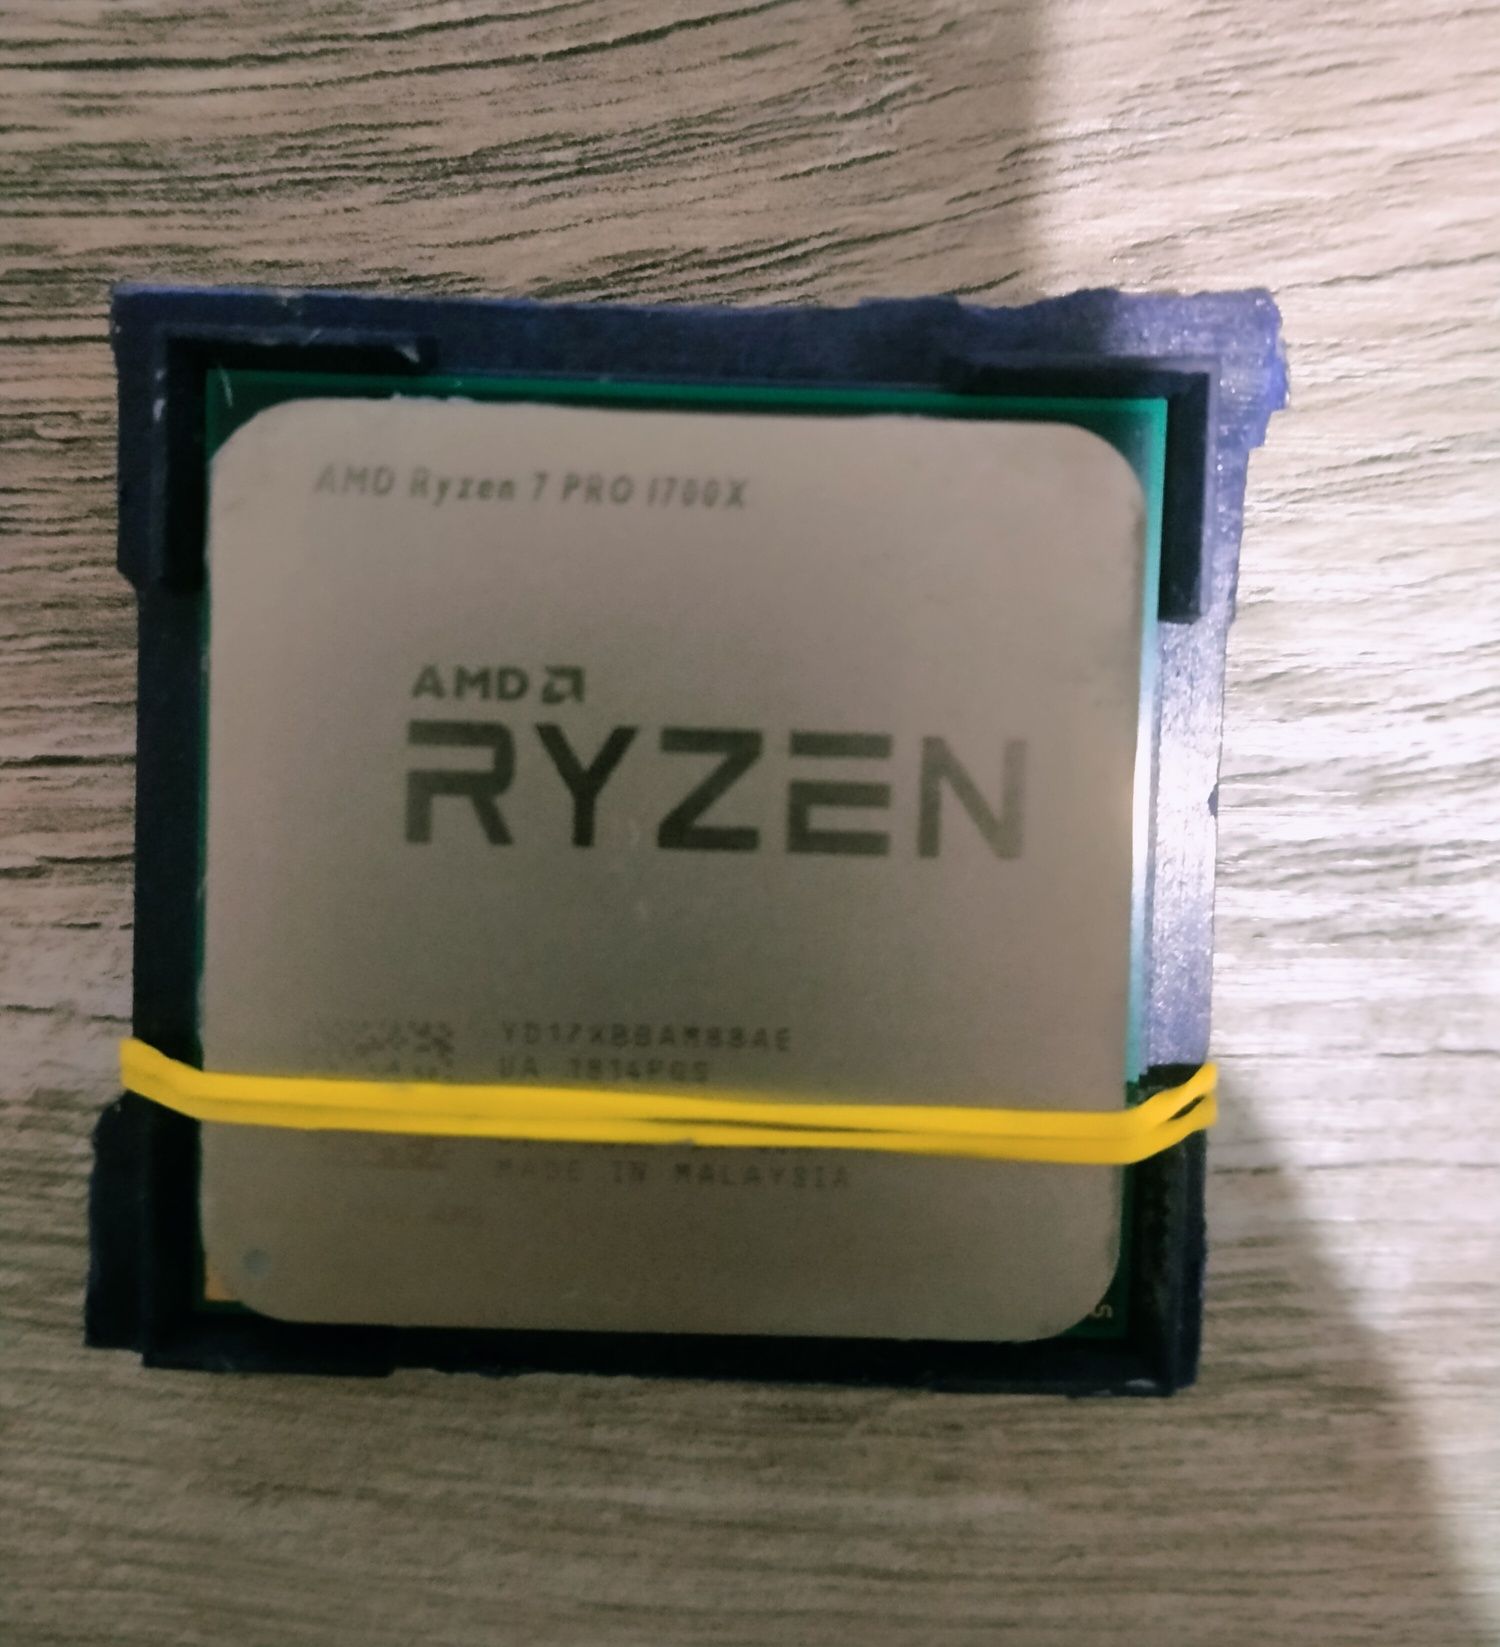 AMD Ryzen 7 PRO 1700x